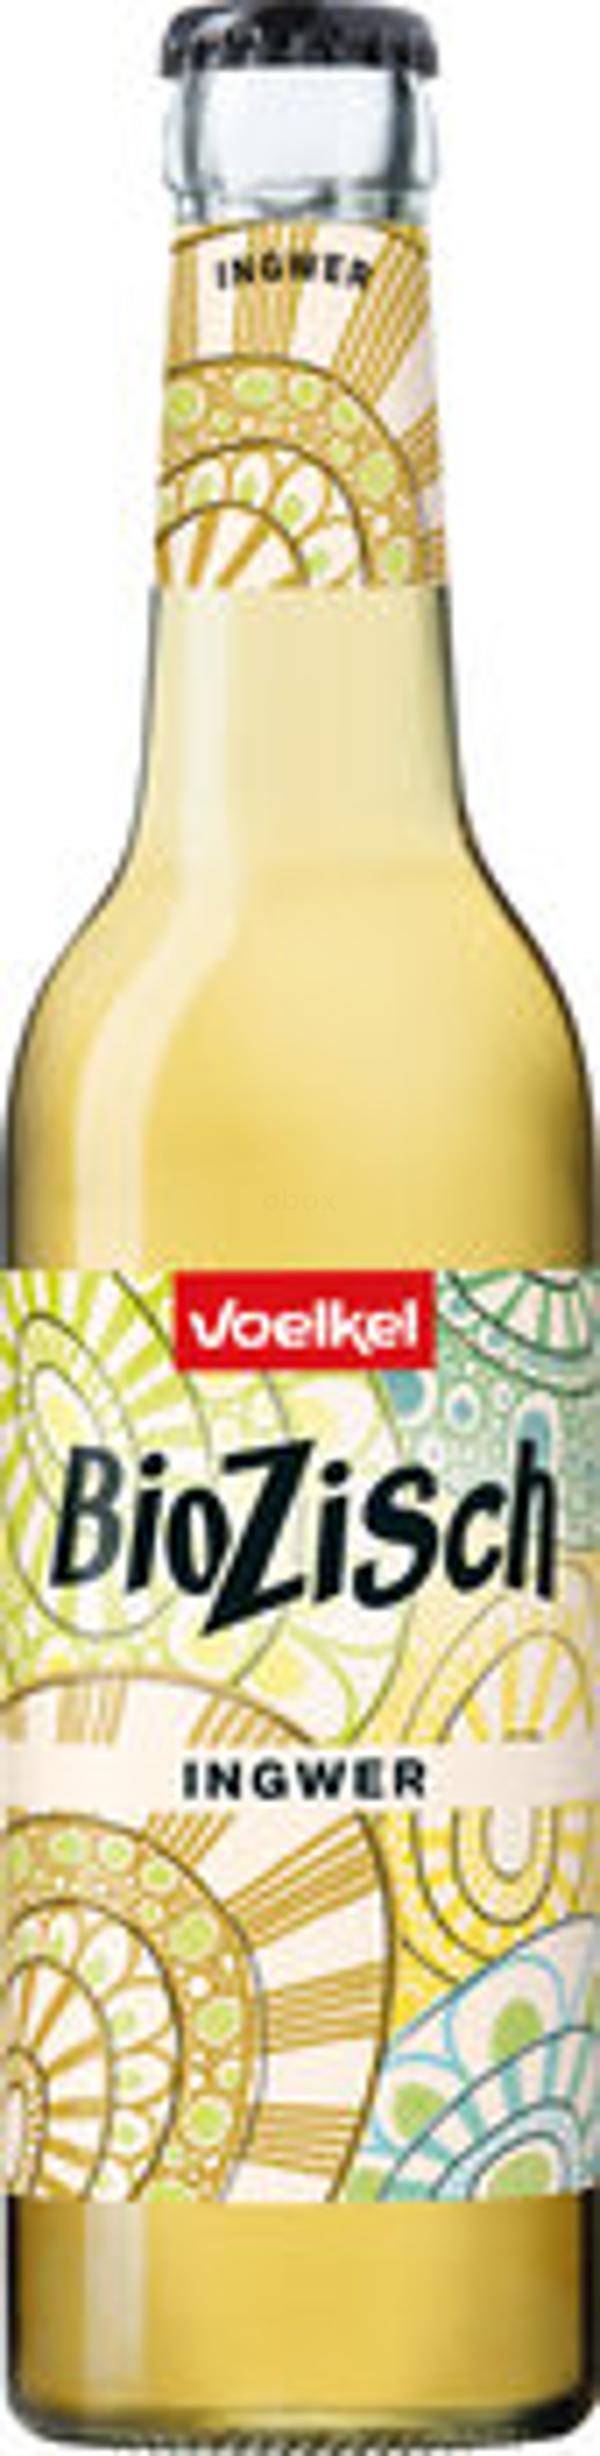 Produktfoto zu BioZisch Ingwer Ginger 0,33l